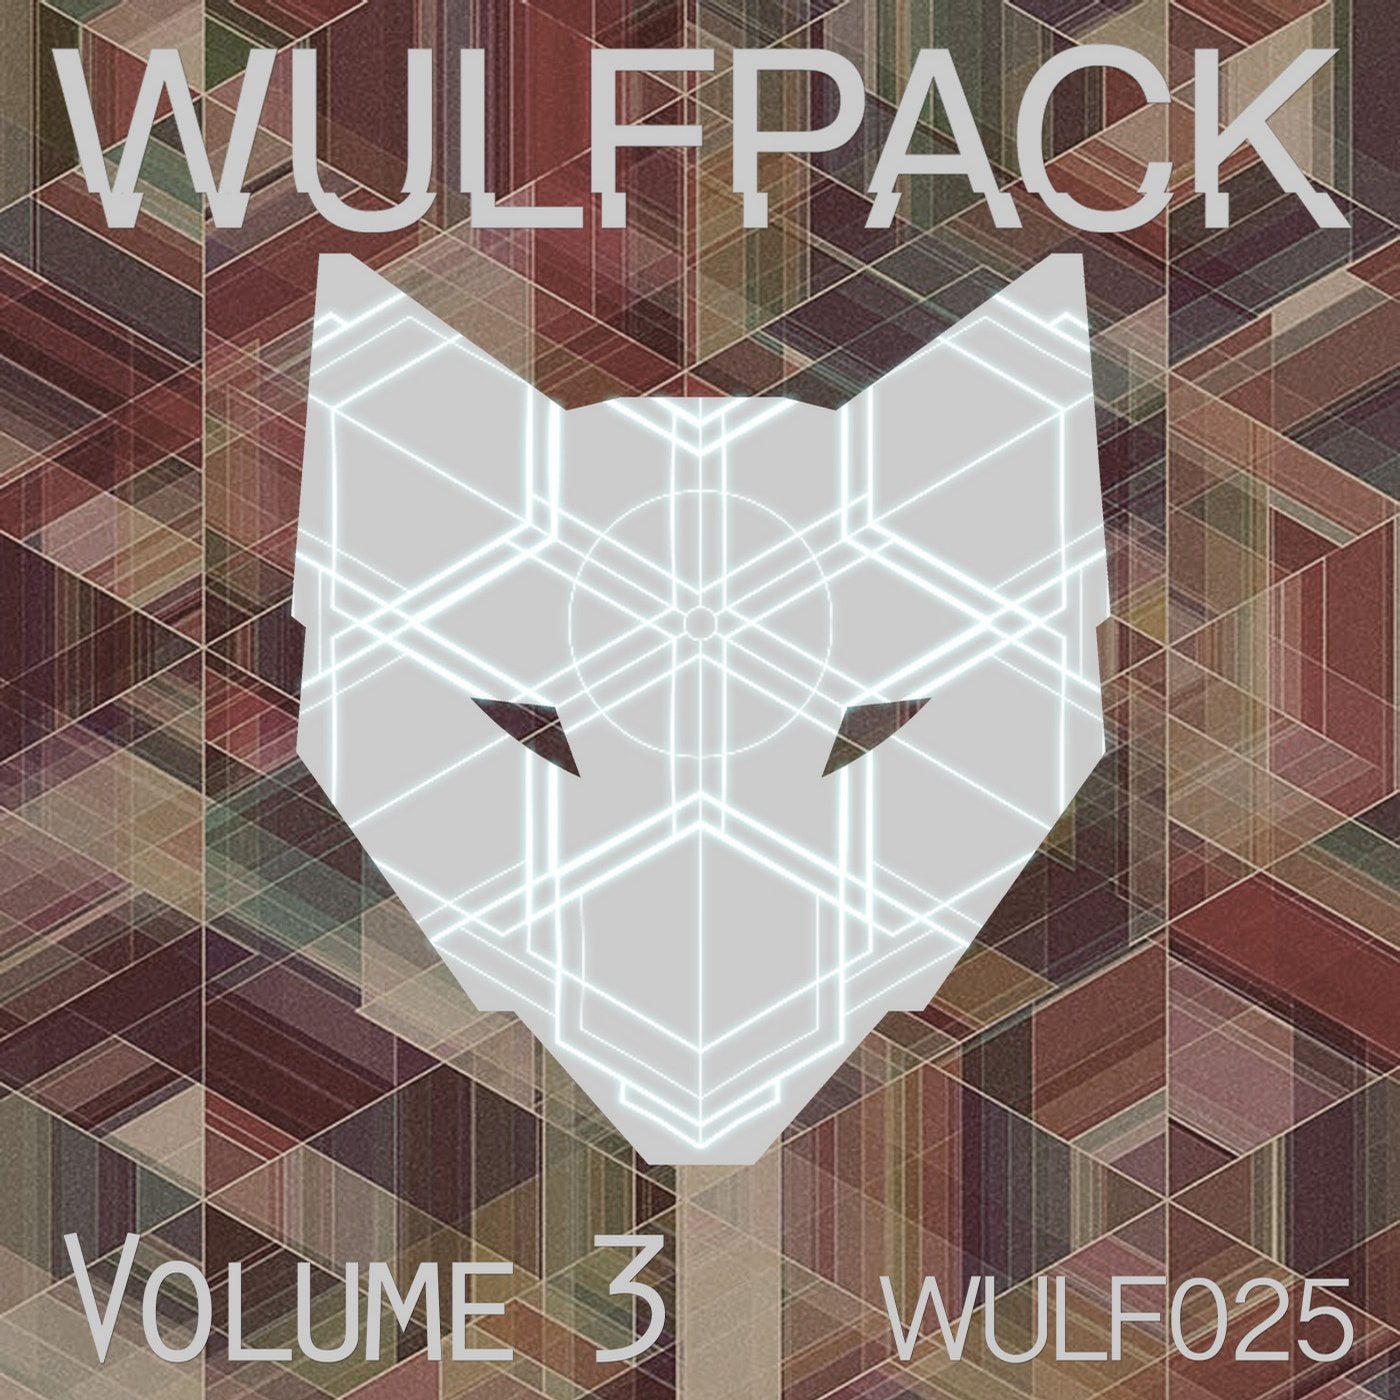 Wulfpack, Vol. 3